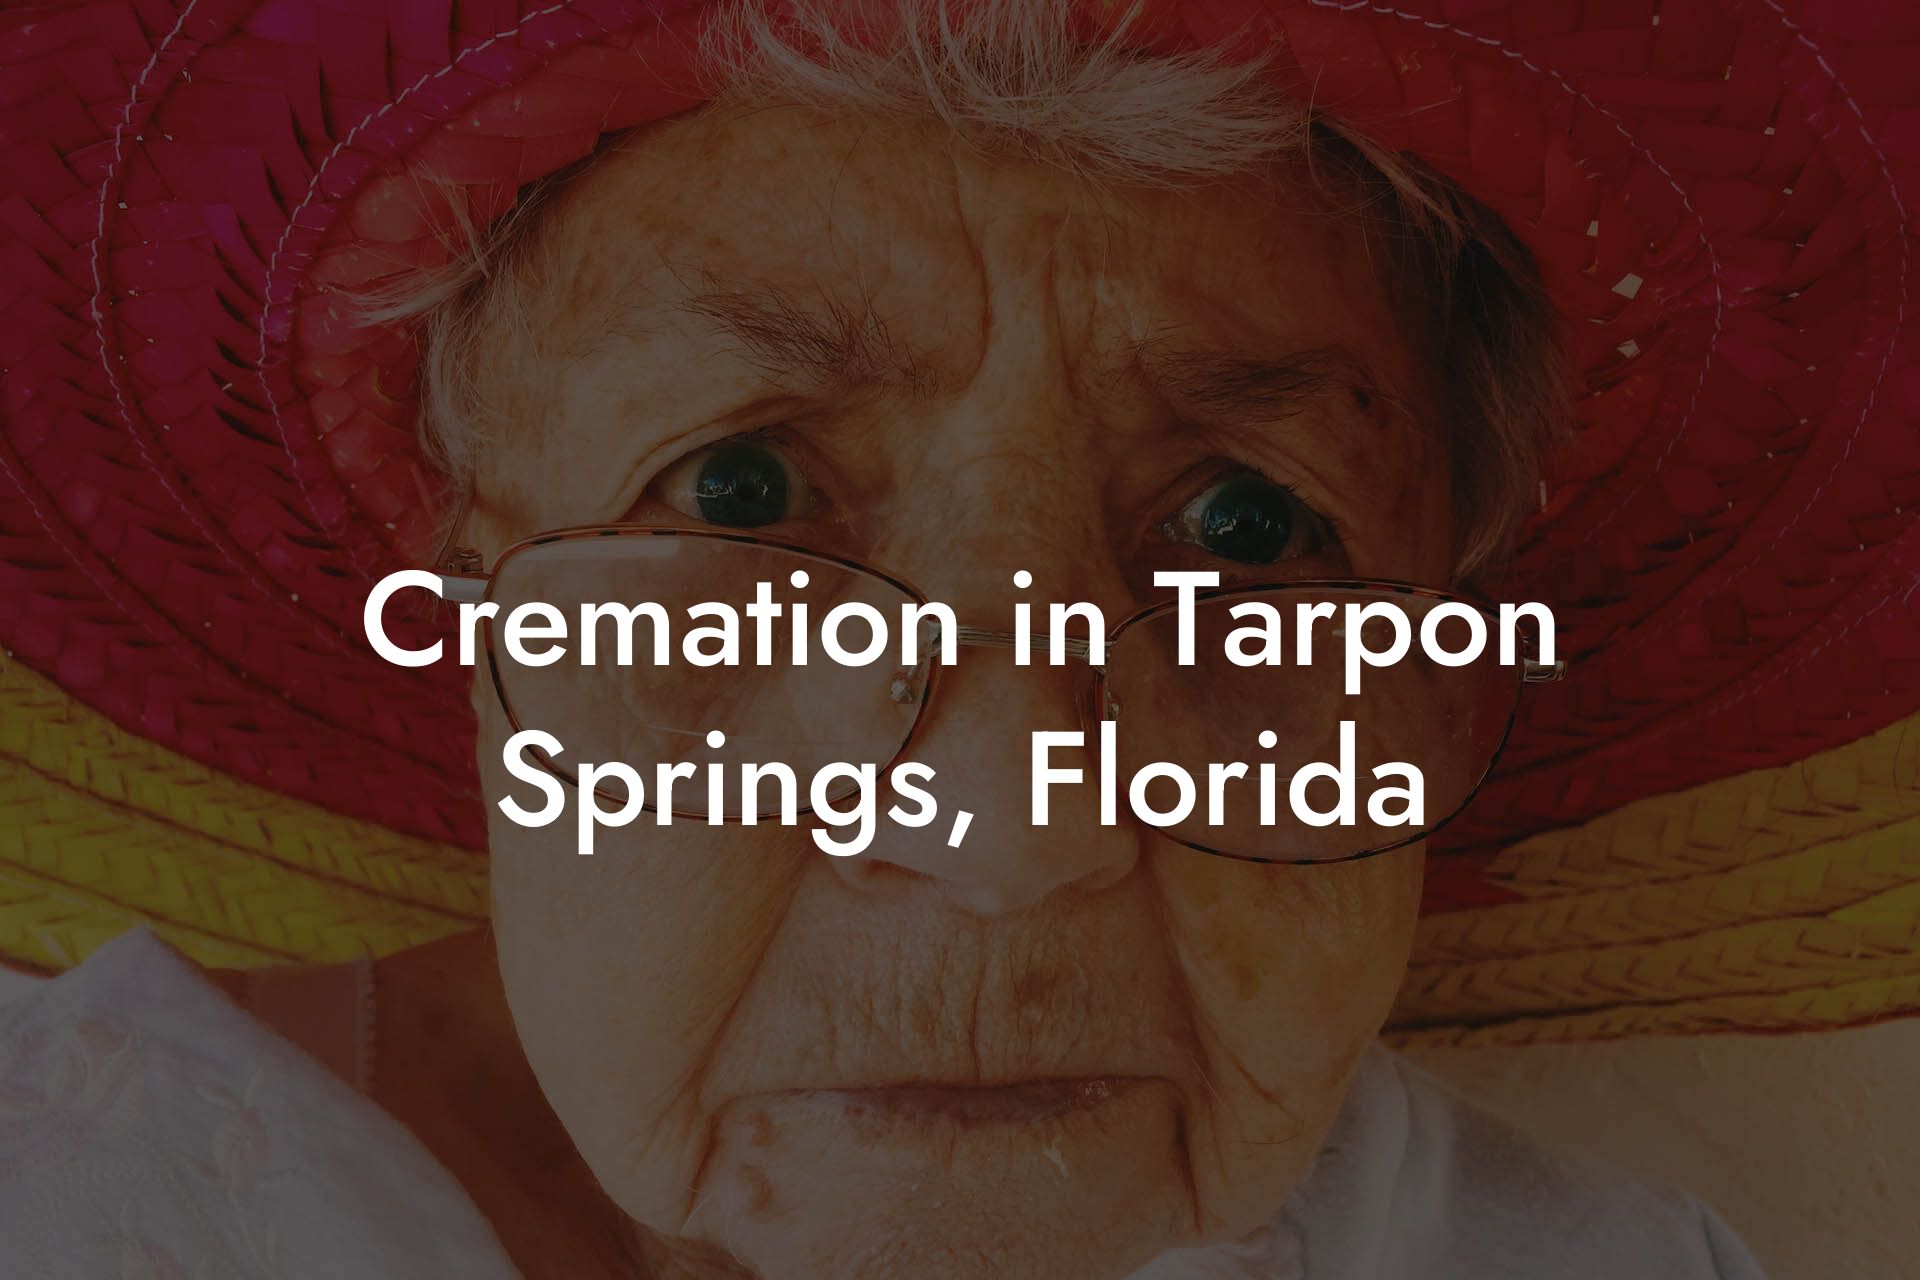 Cremation in Tarpon Springs, Florida